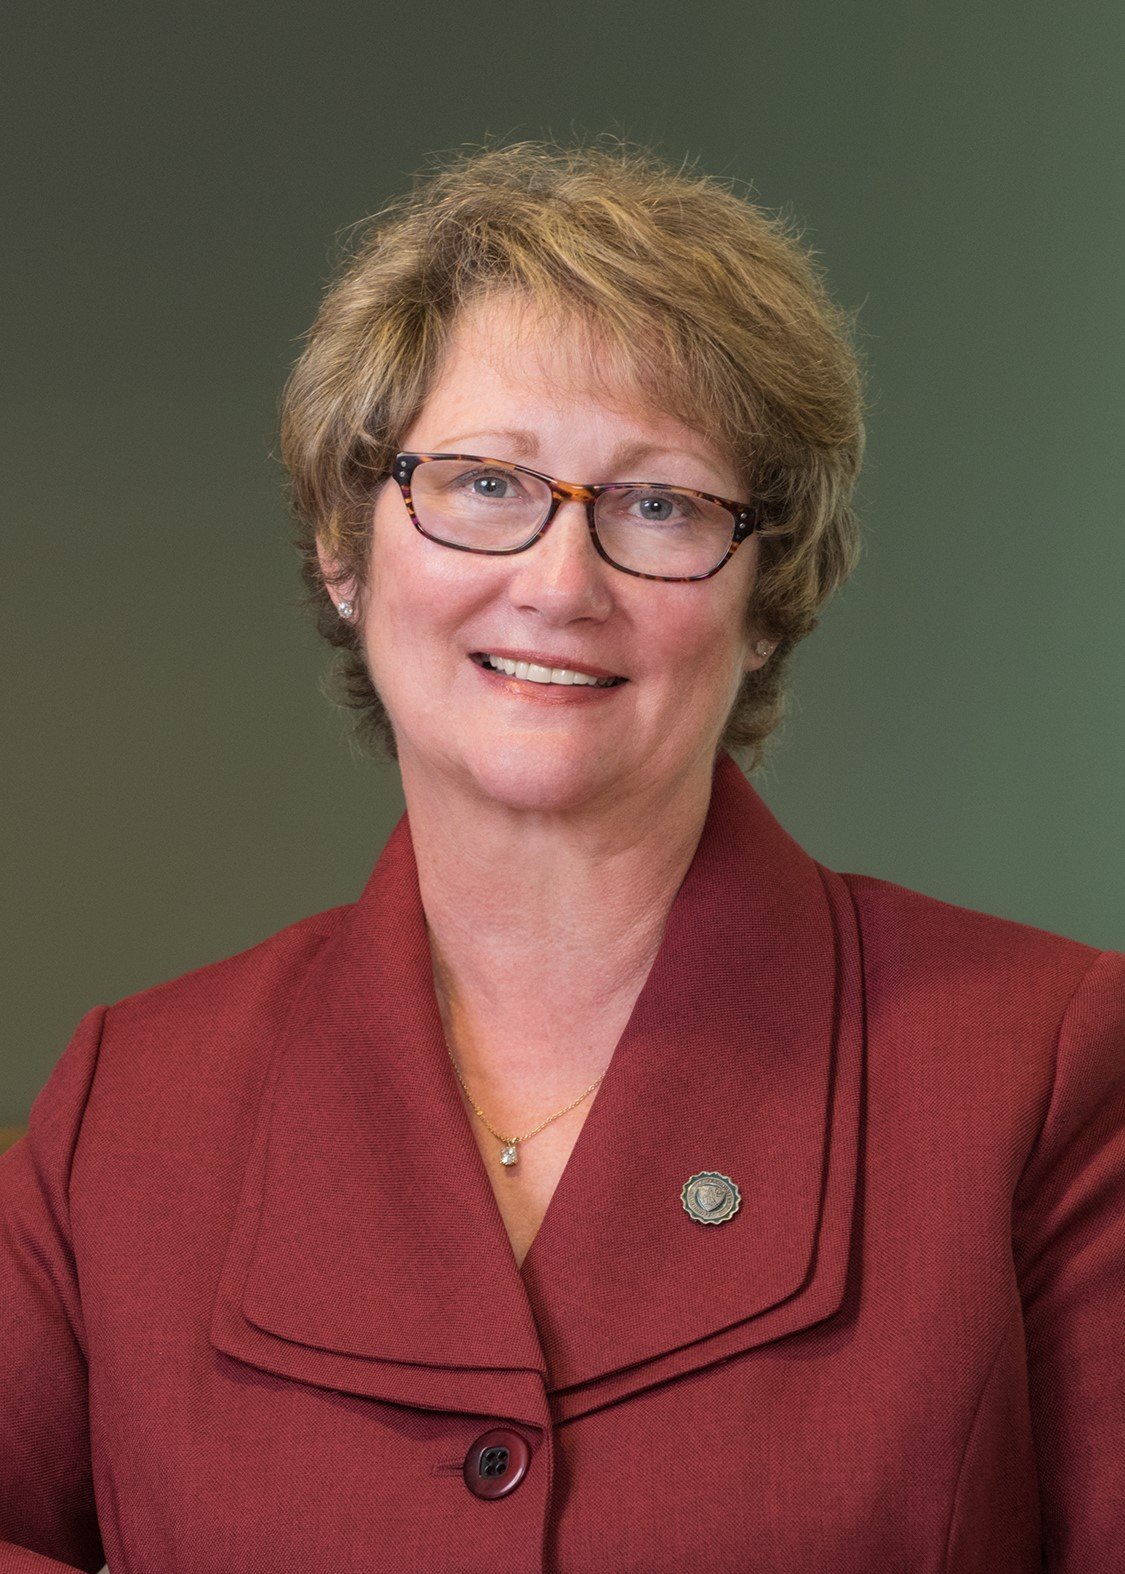 Herkimer College President Cathleen McColgin